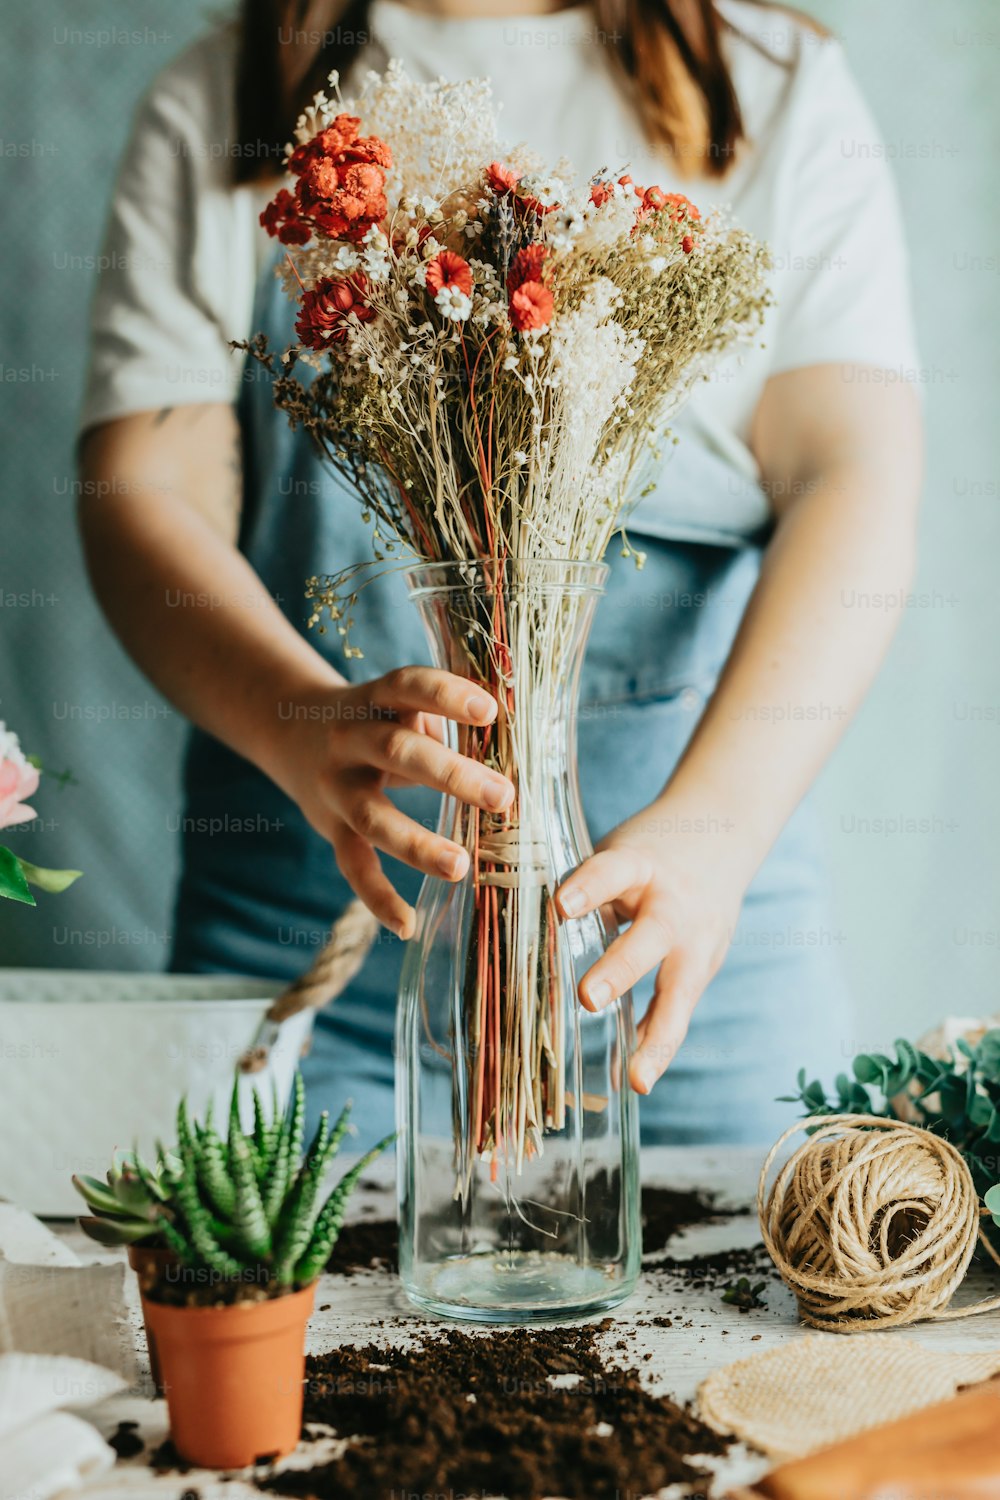 Une femme arrangeant des fleurs dans un vase sur une table